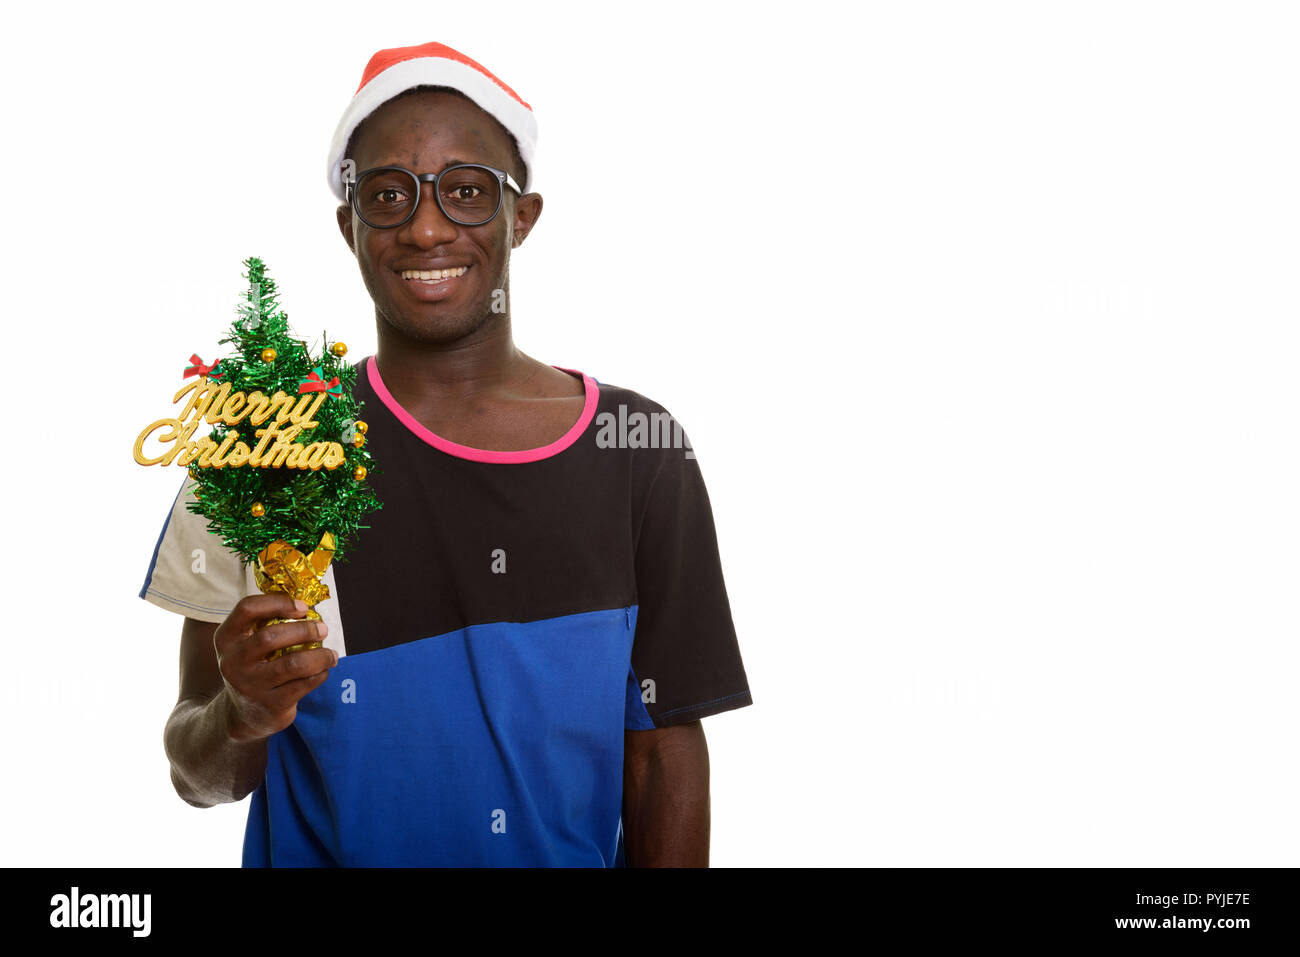 Les jeunes professionnels African man smiling en maintenant Joyeux Noël tr Banque D'Images